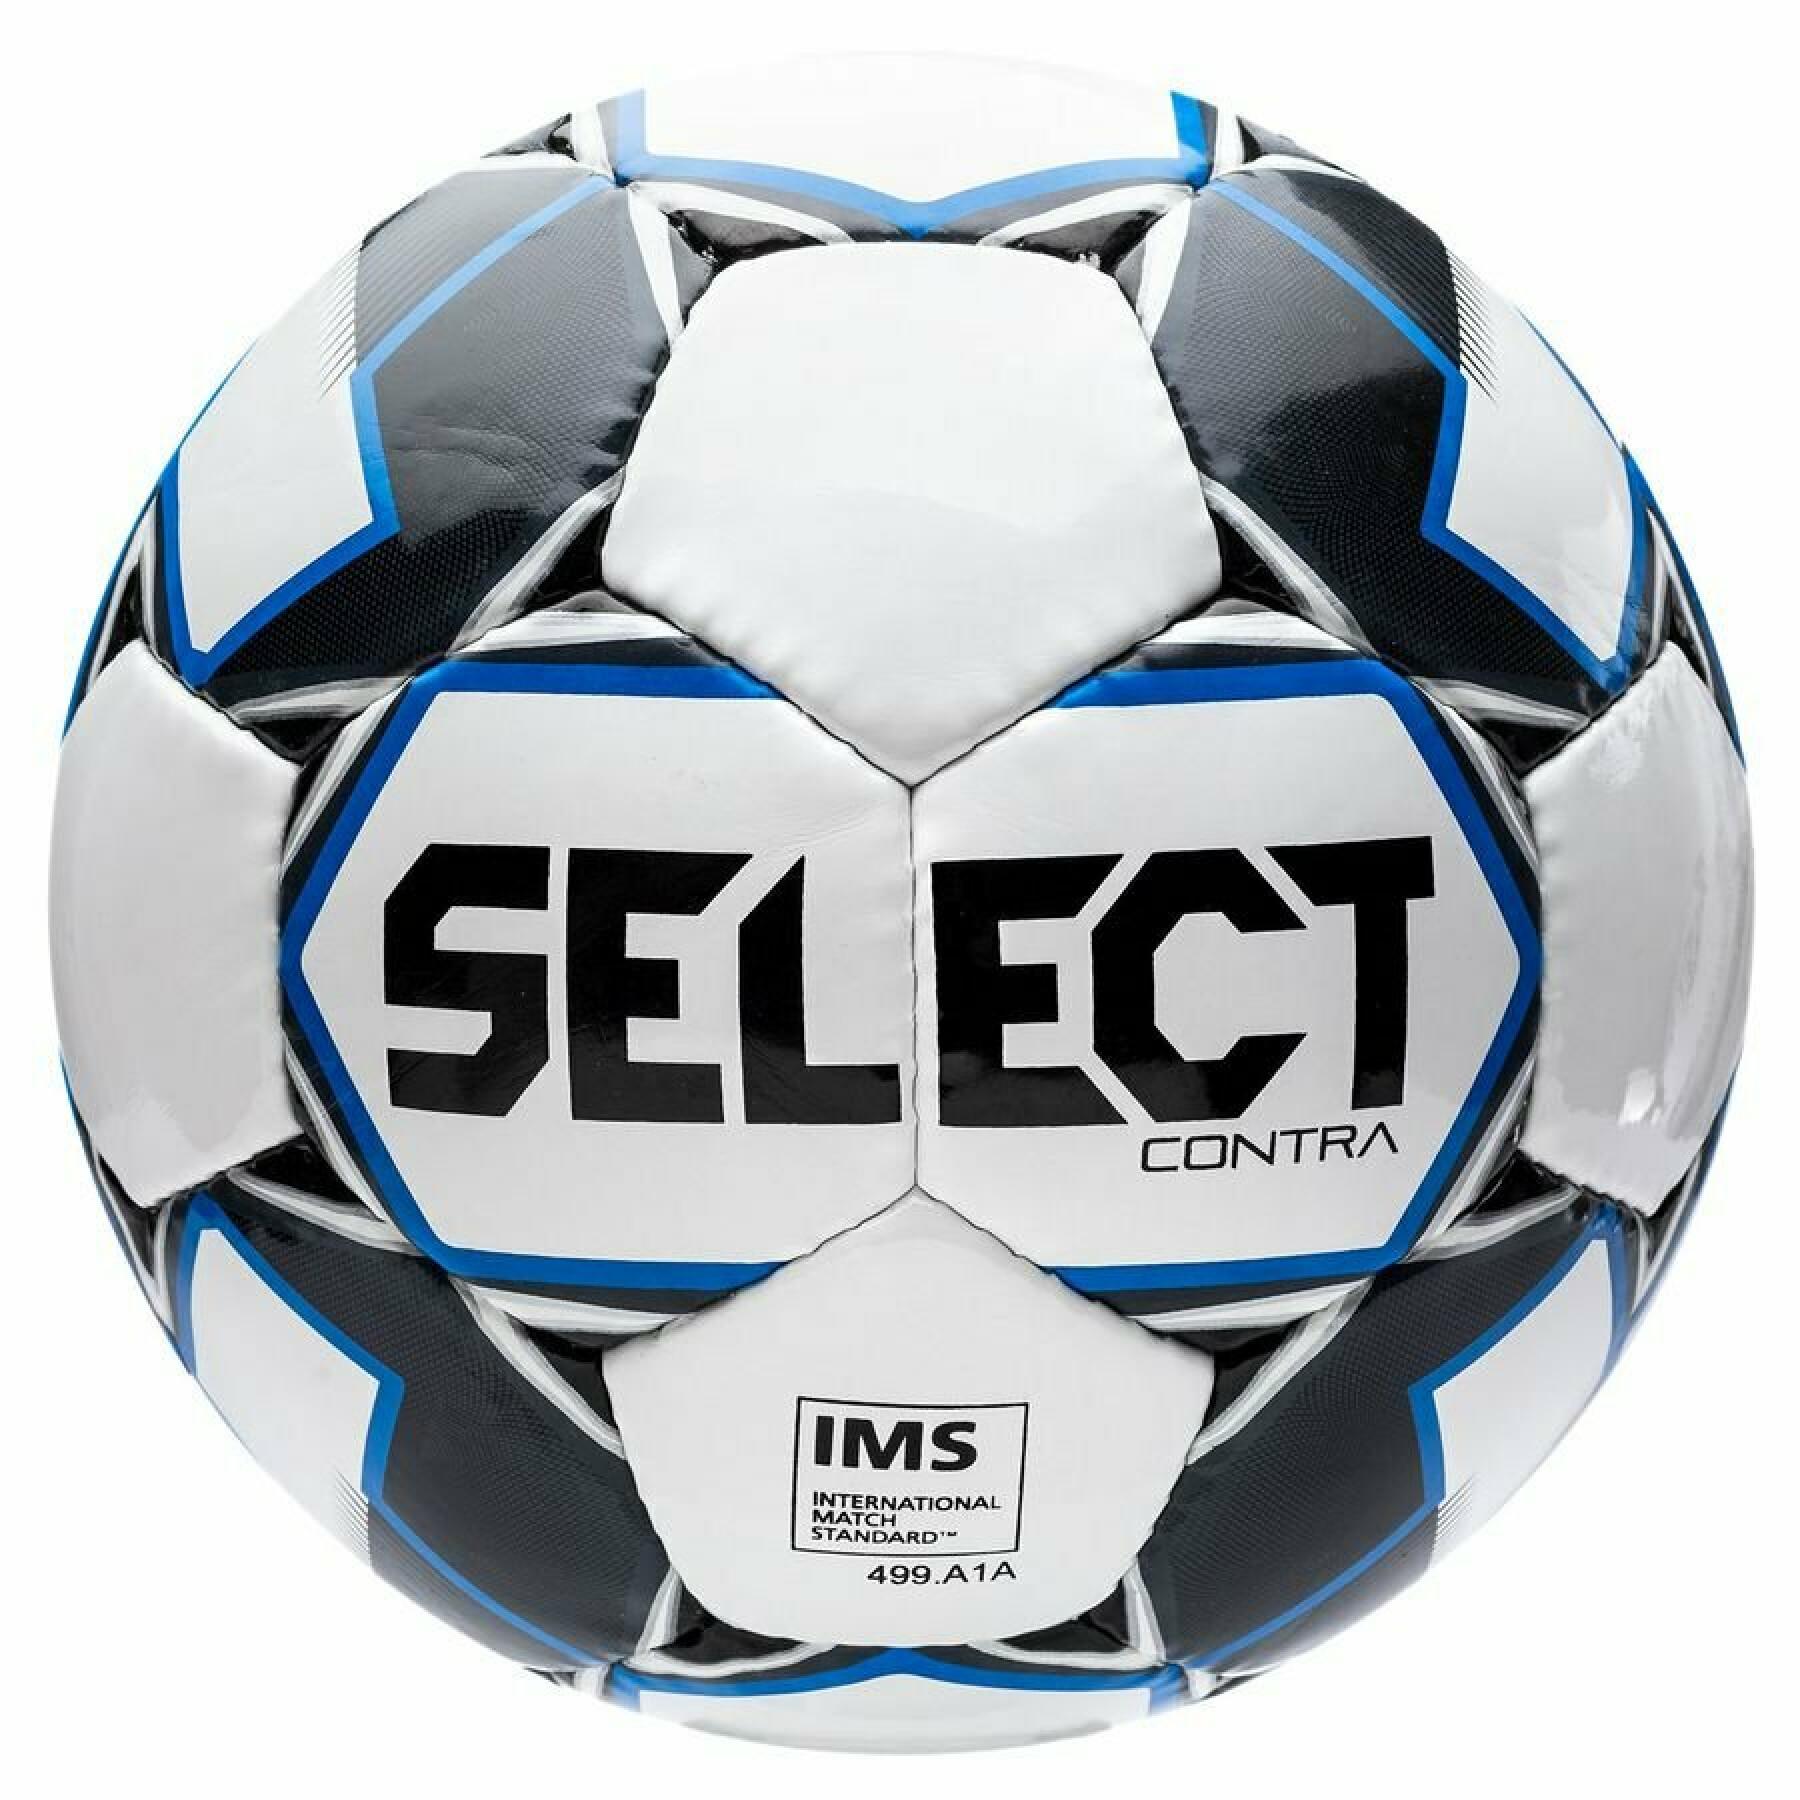 Balon Select Contra FIFA IMS